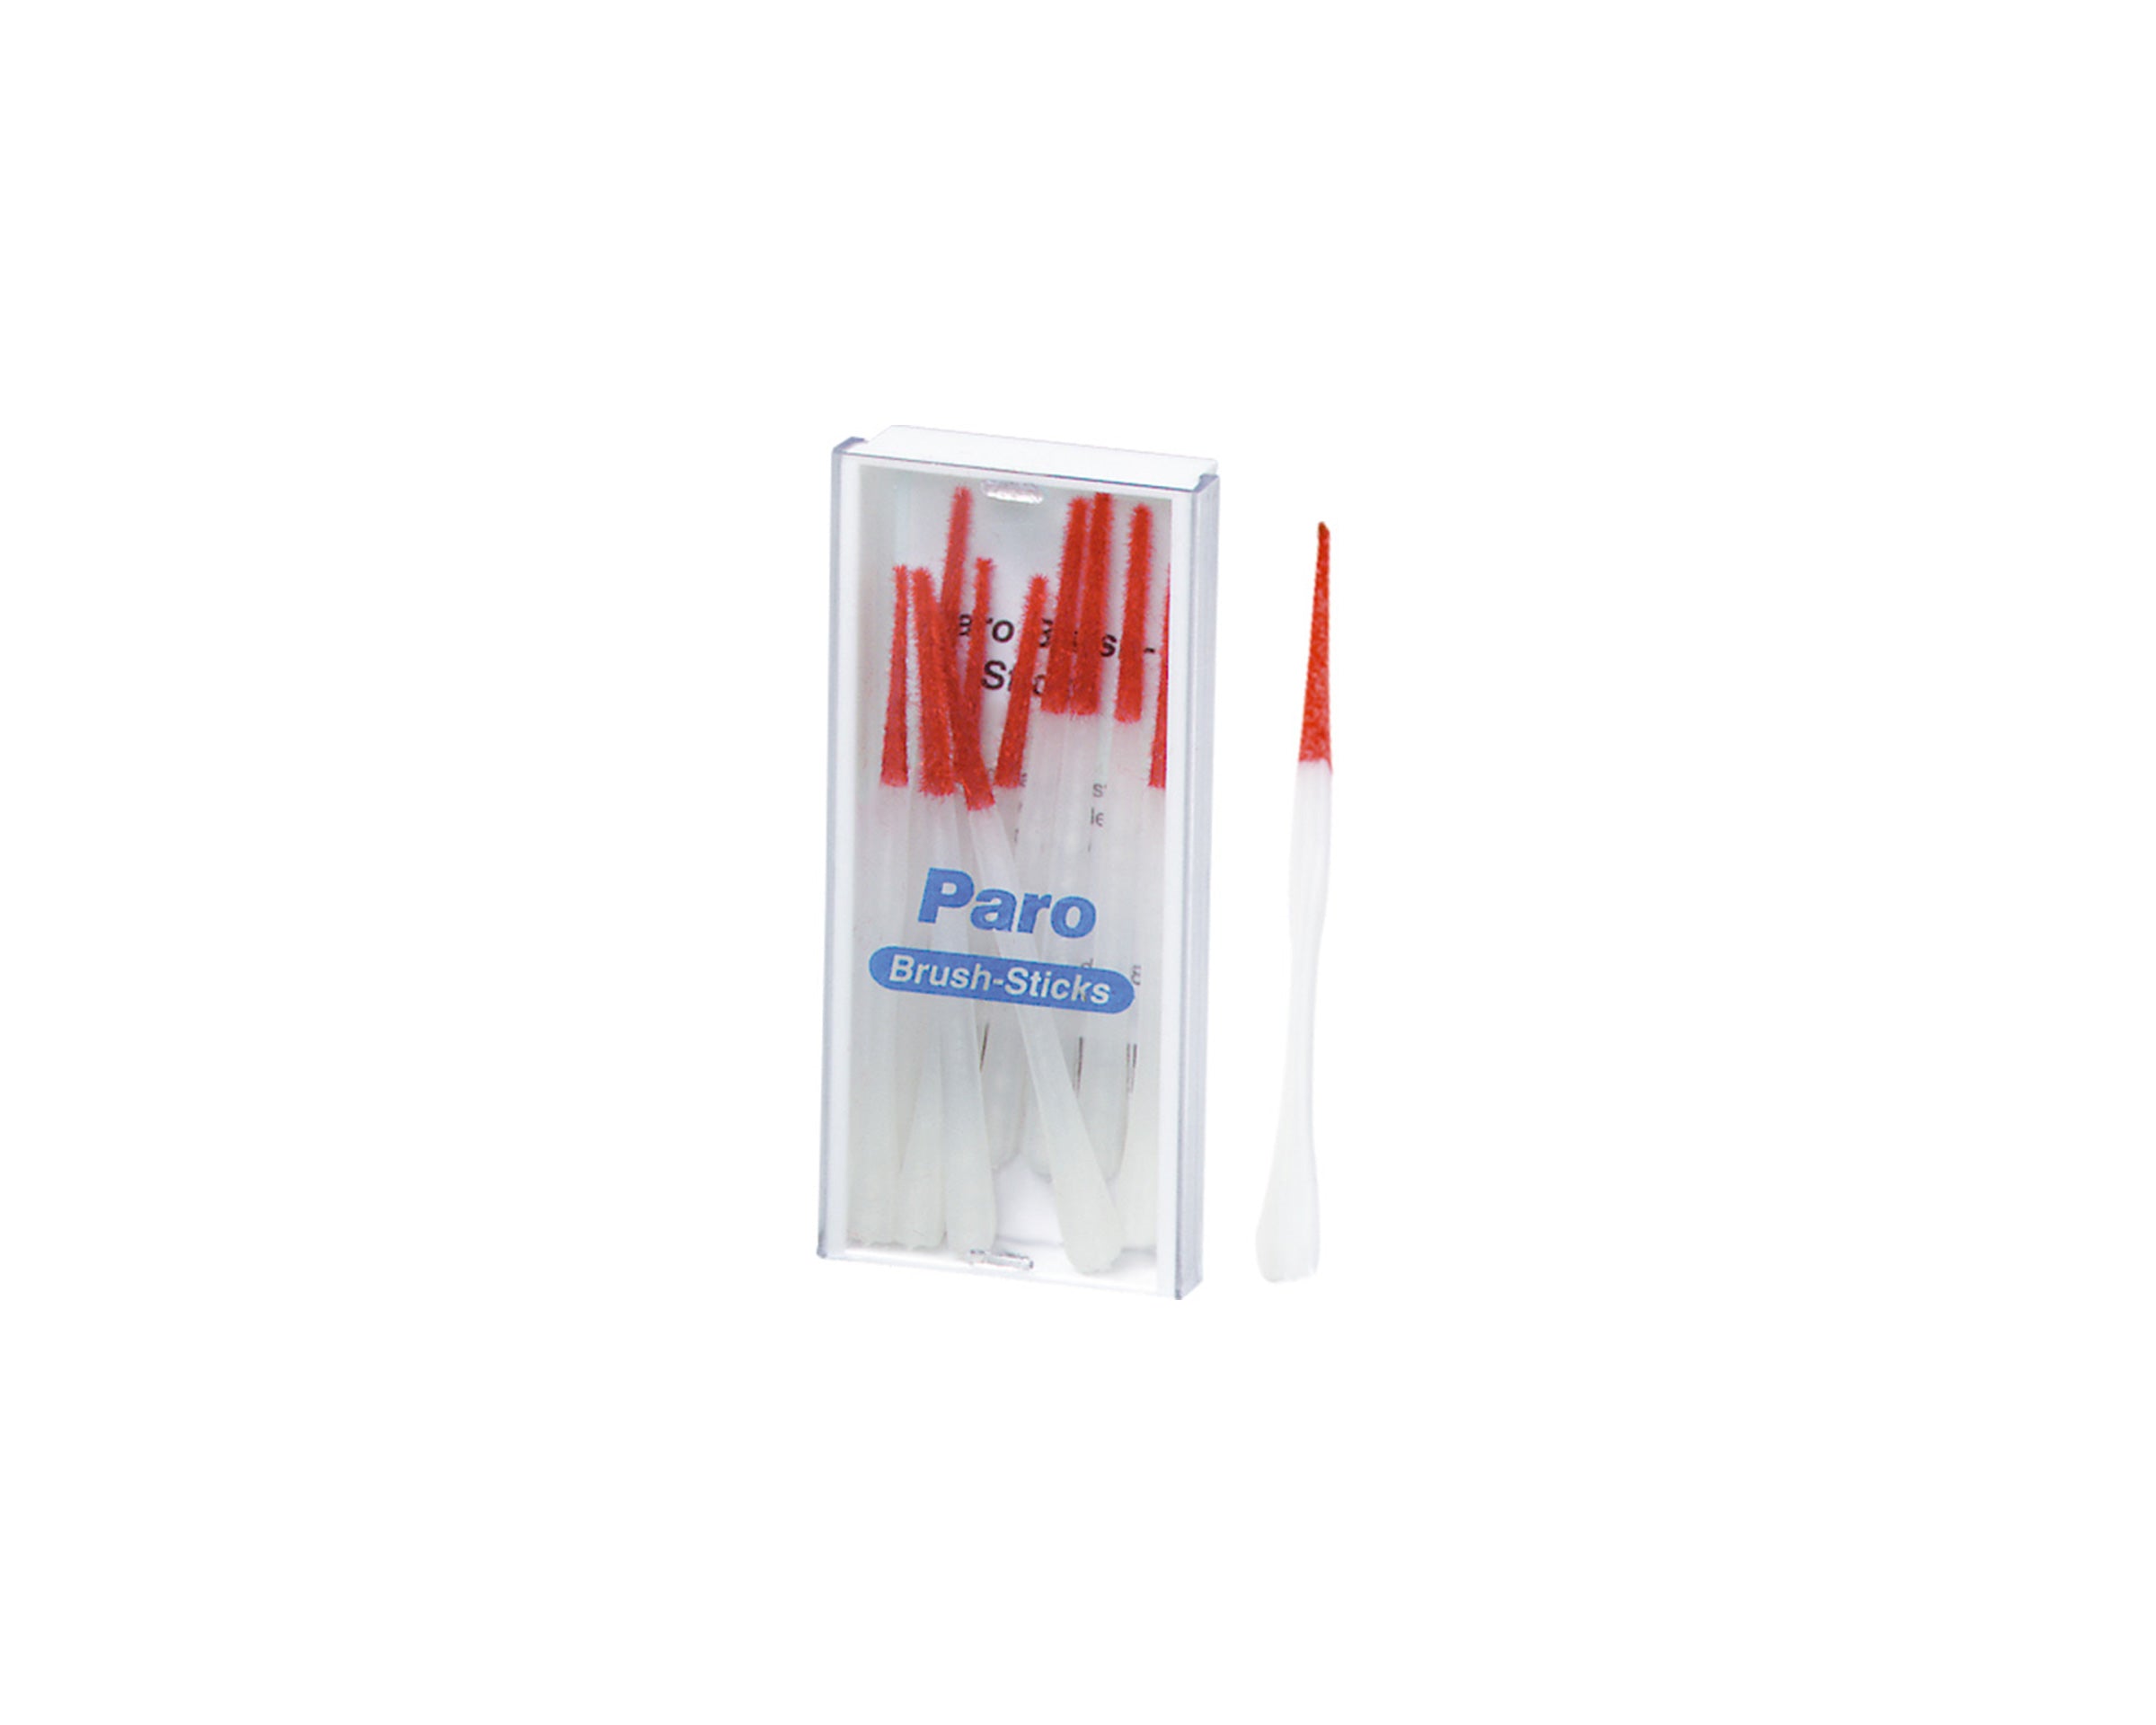 Paro Brush Sticks (10 Stk.)